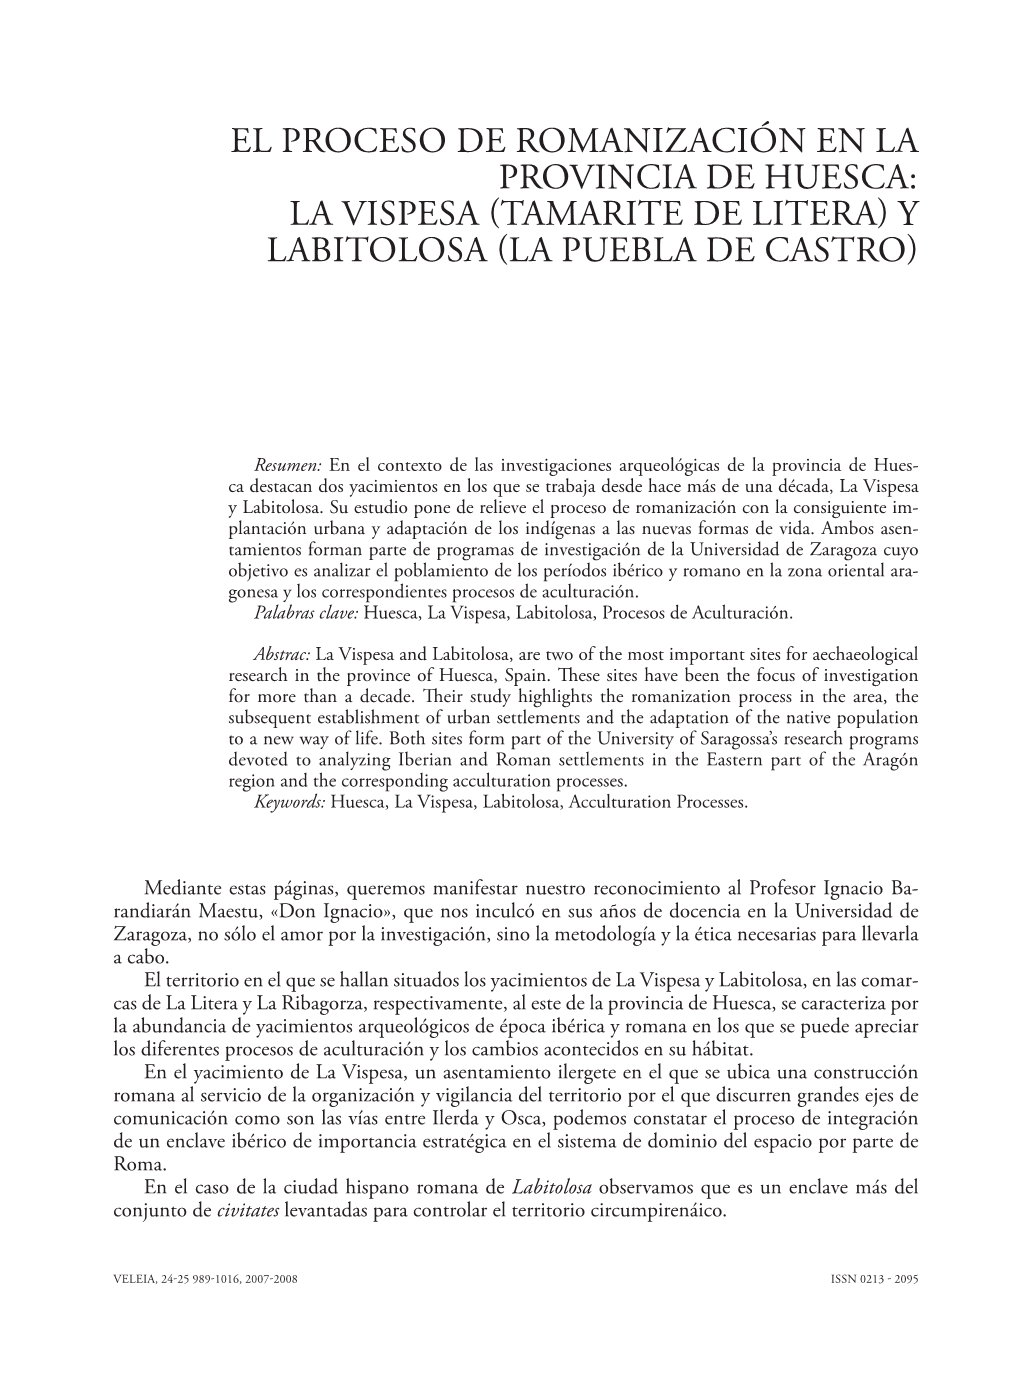 El Proceso De Romanización En La Provincia De Huesca: La Vispesa Tamarite De Litera Y Labitolosa La Puebla De Castro